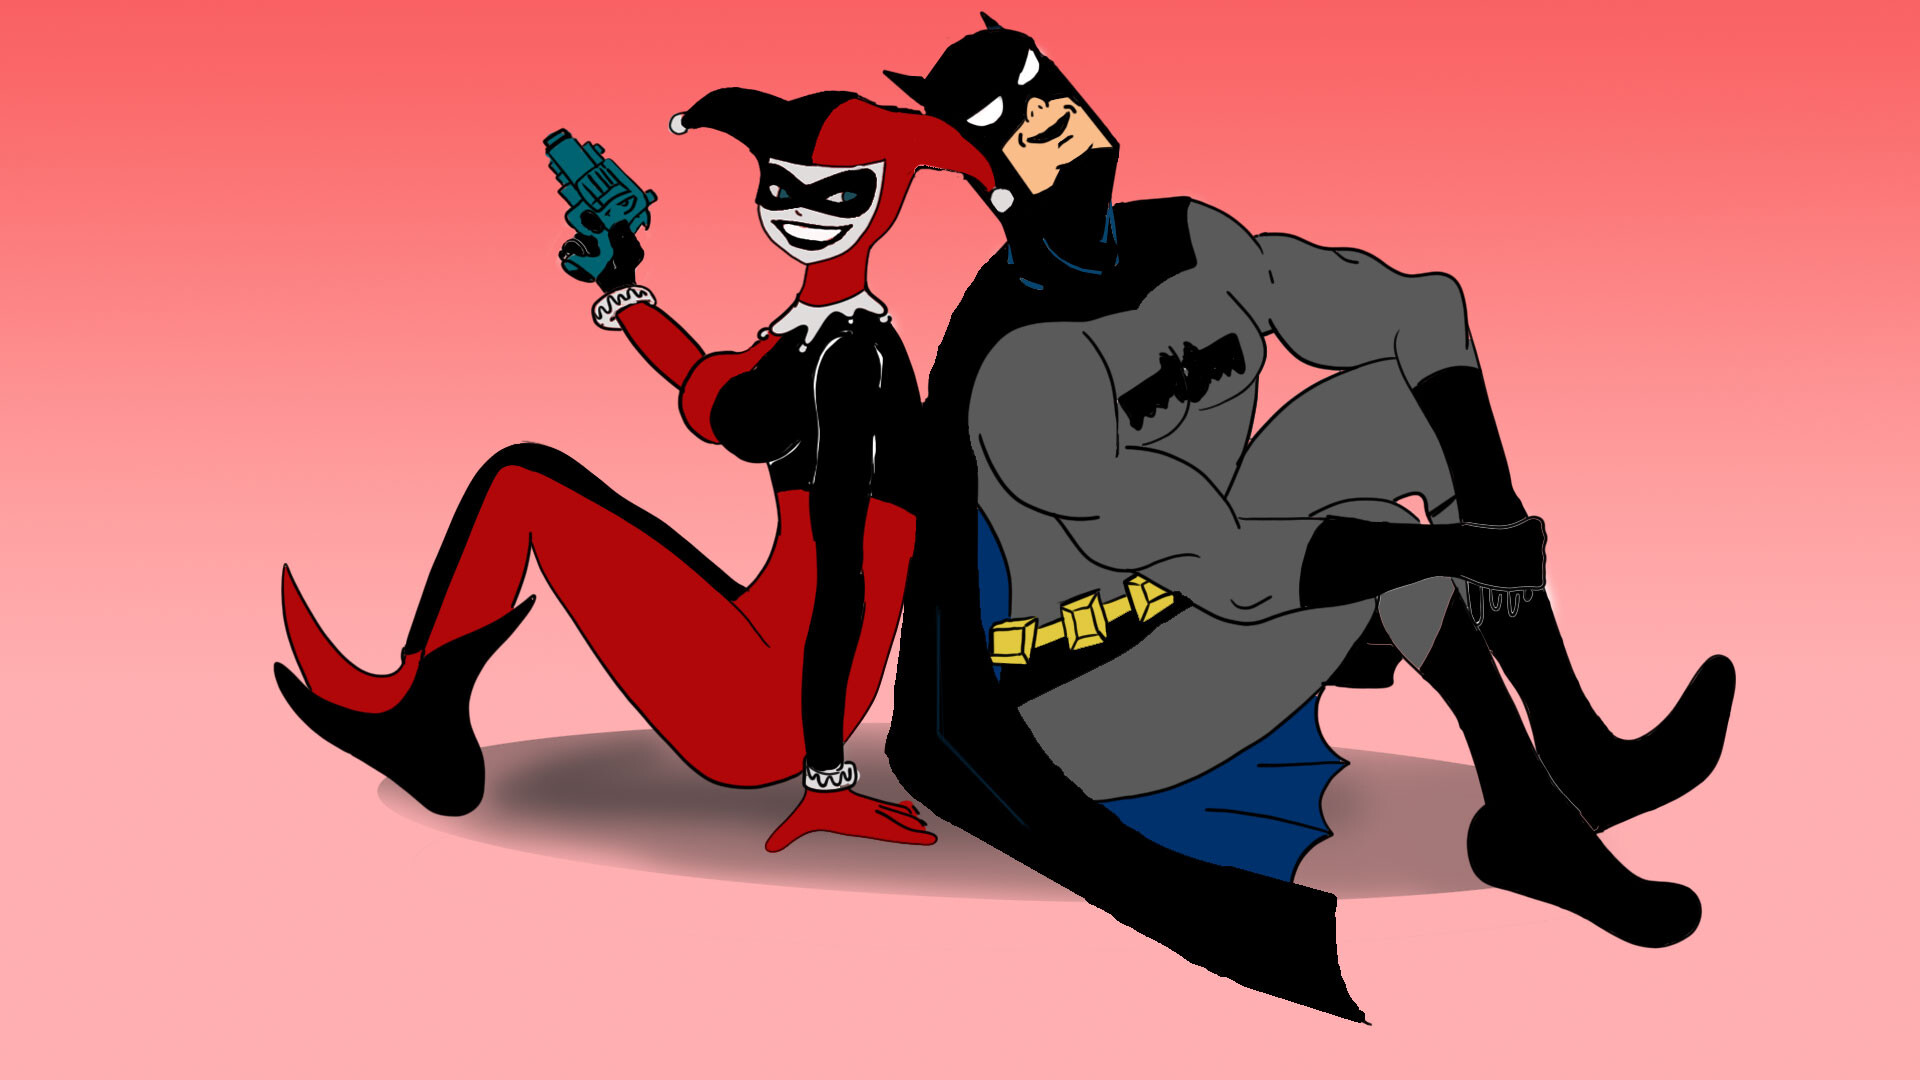 ArtStation - Batman & Harley Quinn